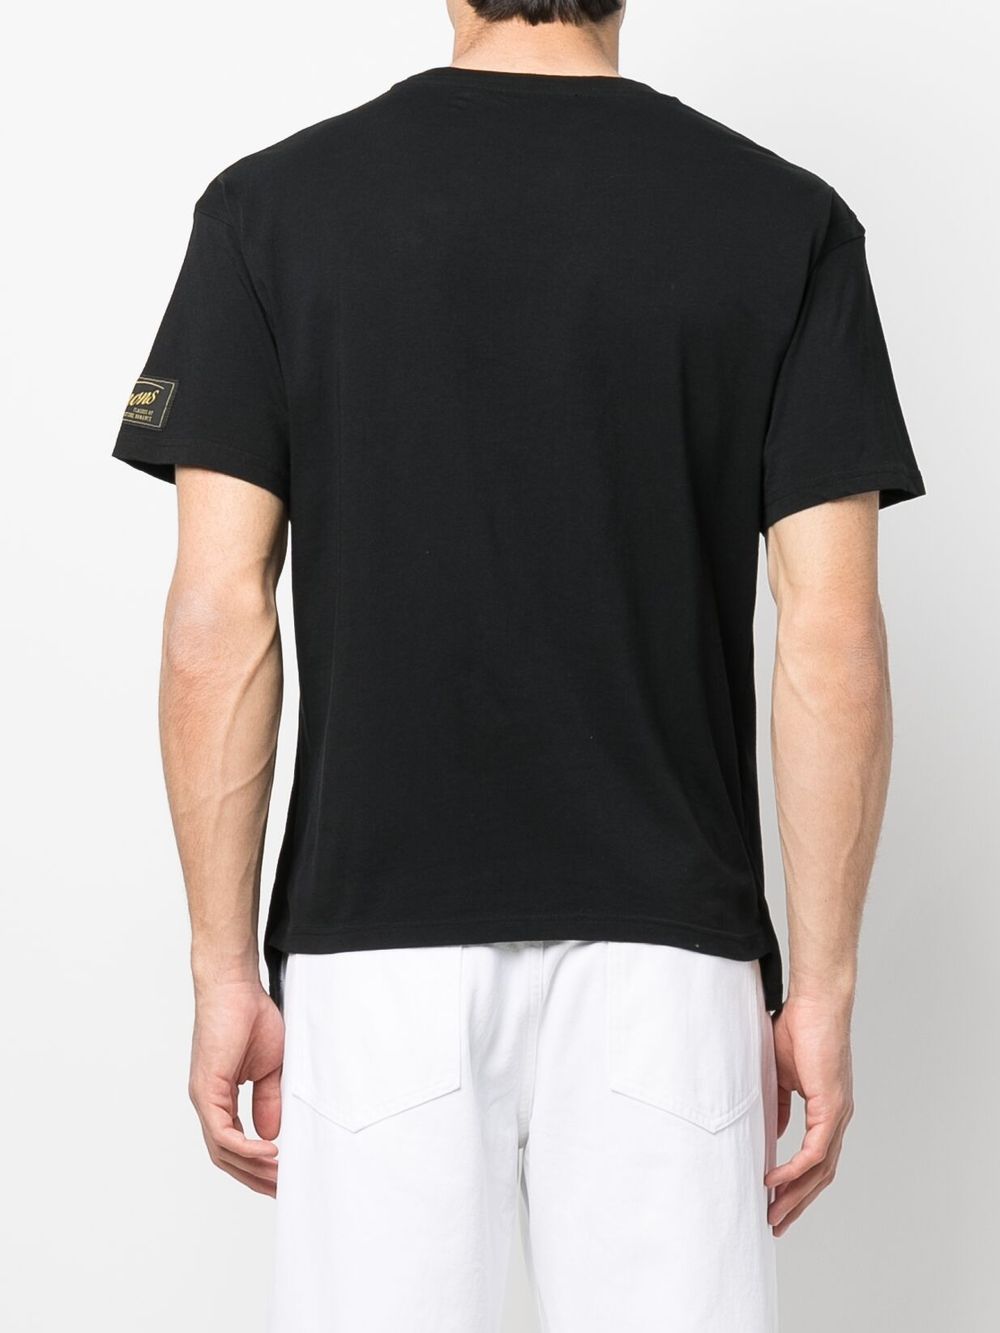 graphic-print layered T-shirt